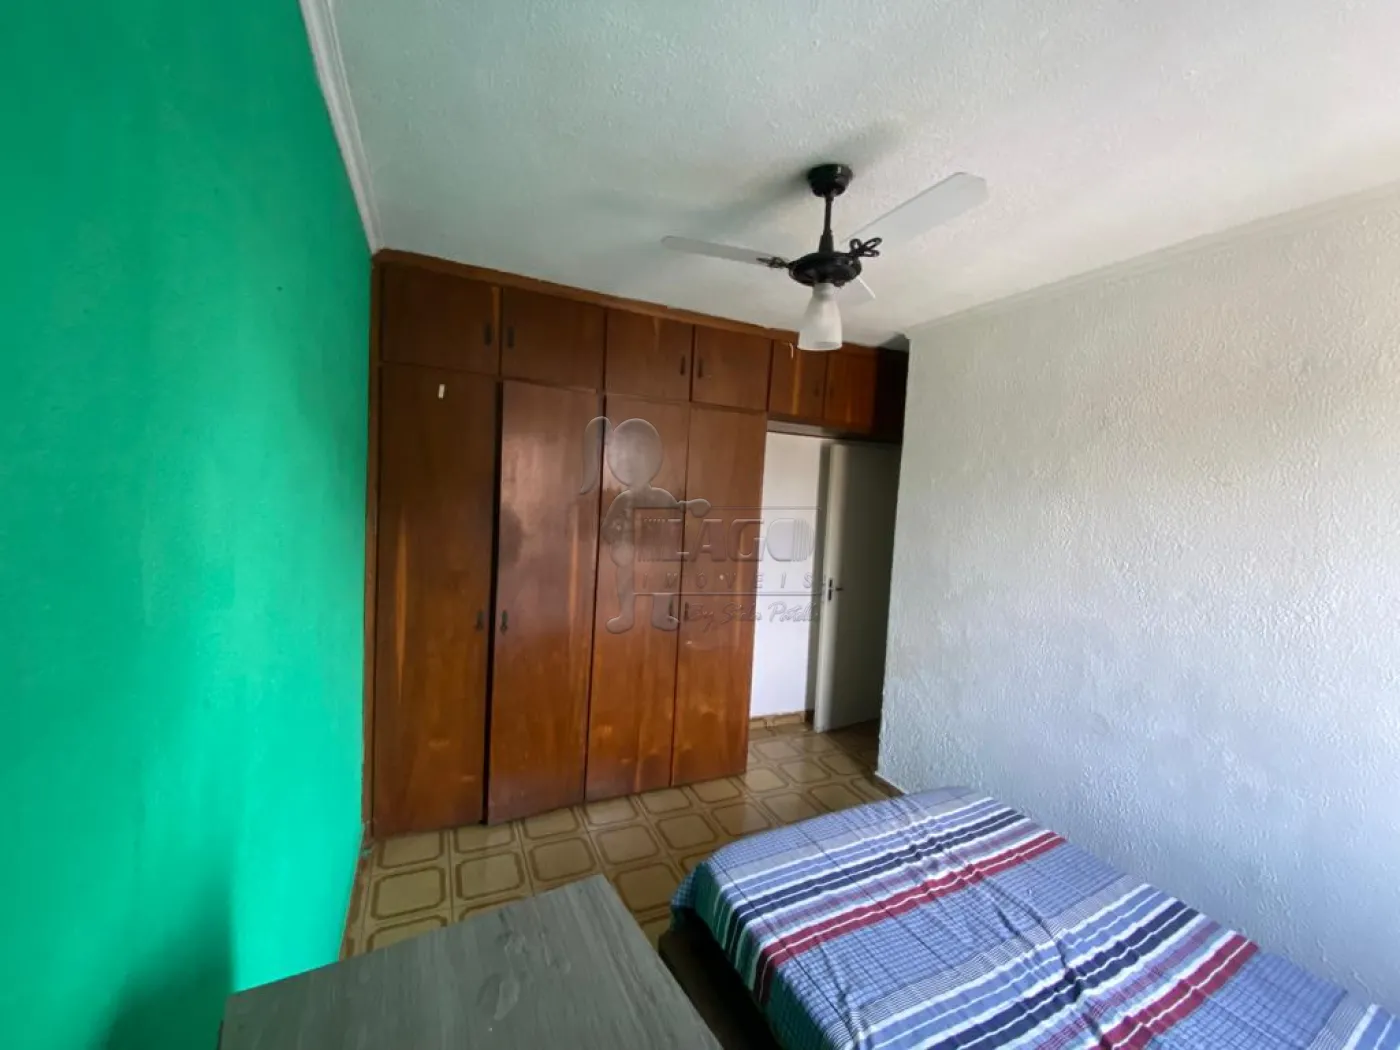 Comprar Casas / Condomínio em Ribeirão Preto R$ 430.000,00 - Foto 10